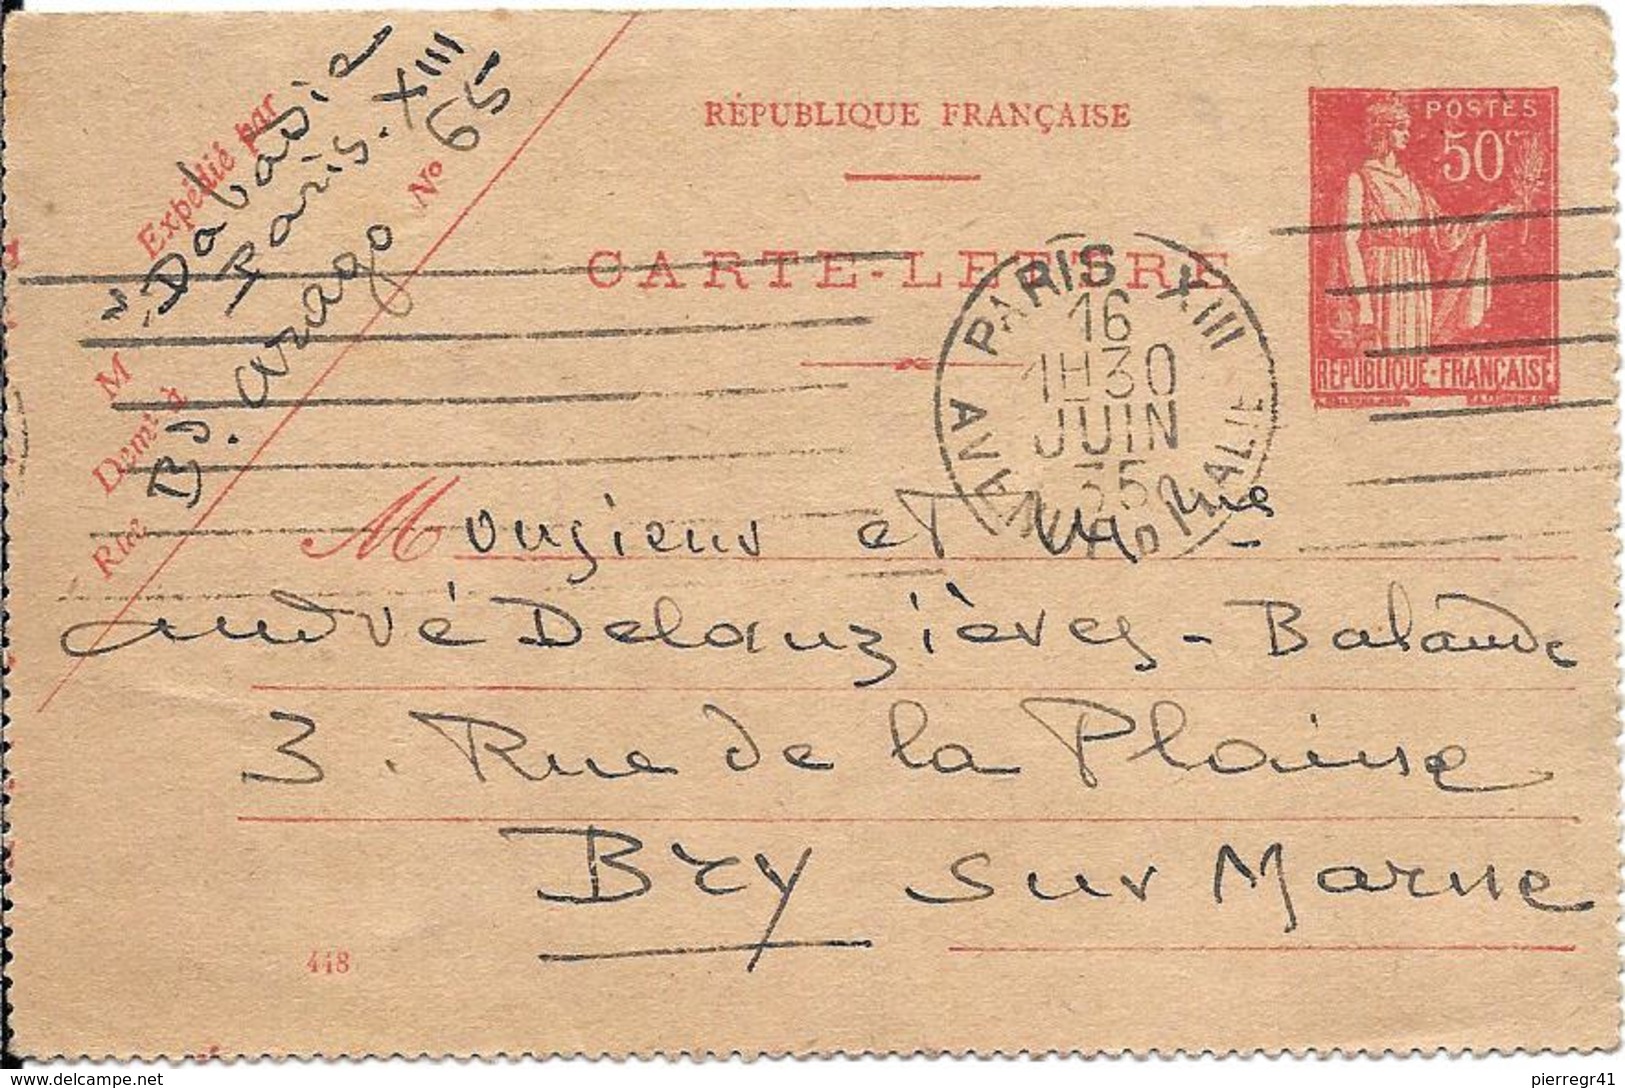 CARTE-LETTRE-1935-Cachet Paris-Ecrite-TBE - Cartes-lettres